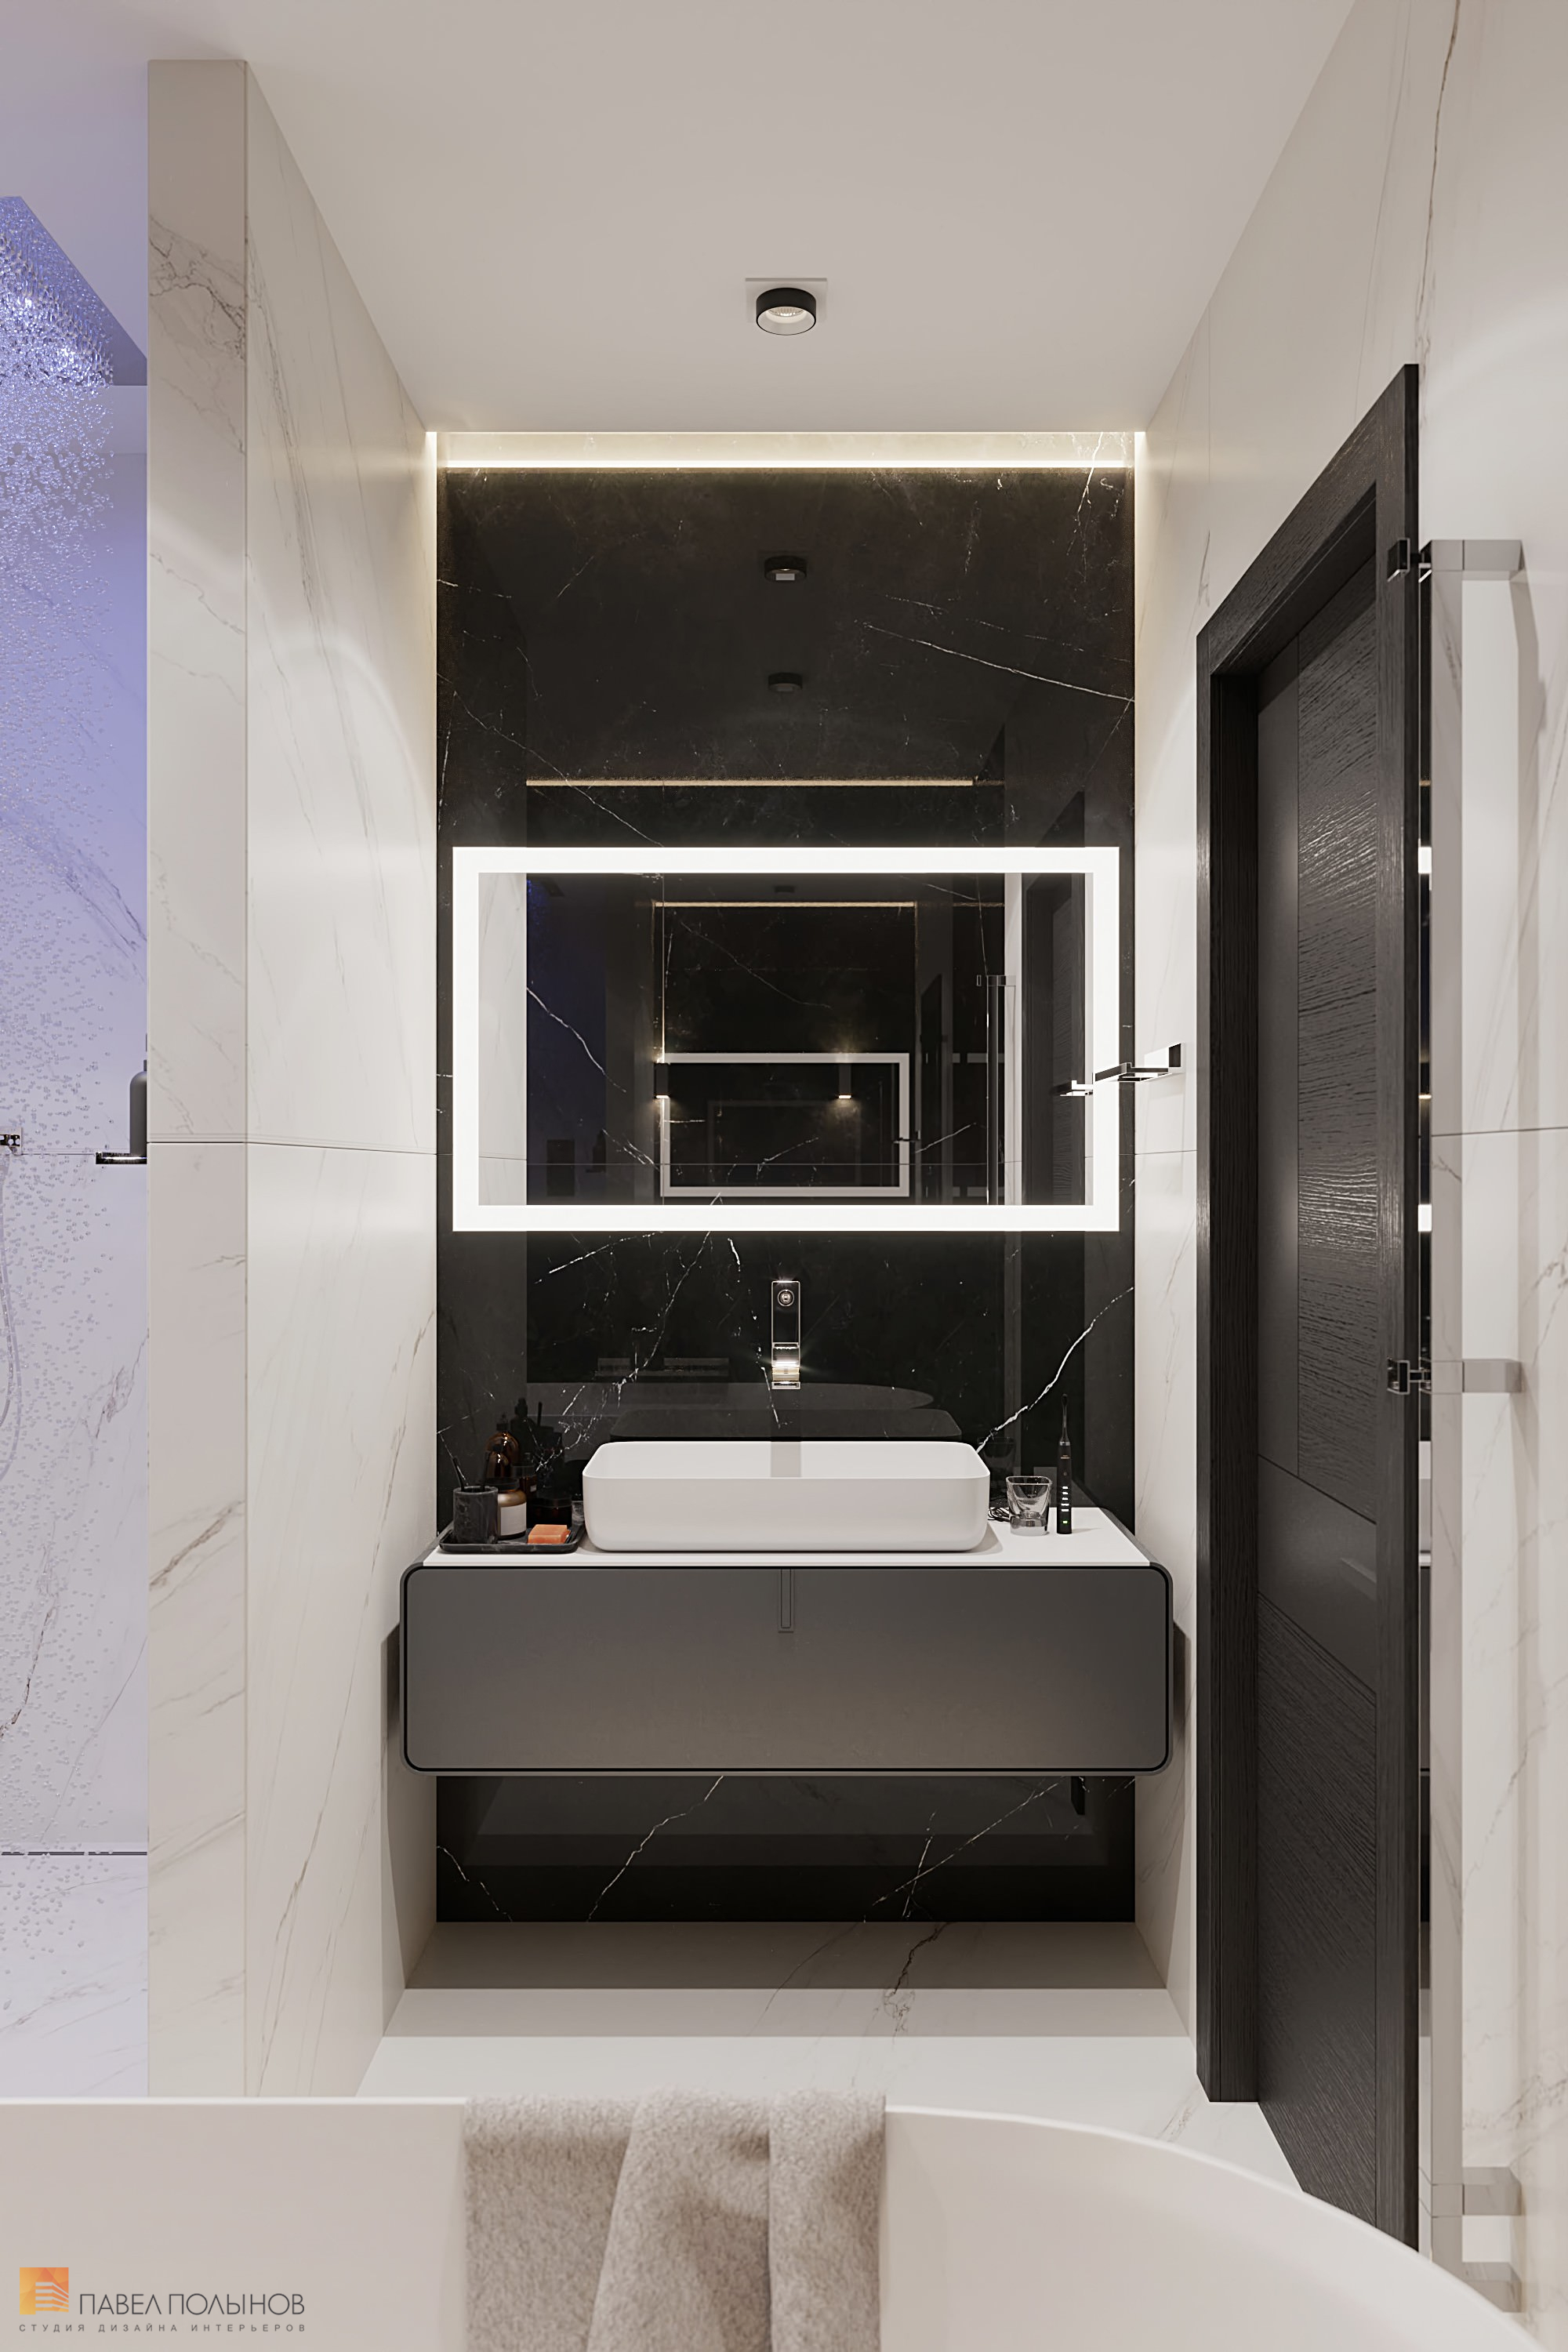 Фото дизайн ванной комнаты из проекта «Интерьер квартиры в современном стиле, ЖК «Остров», 90 кв.м.»